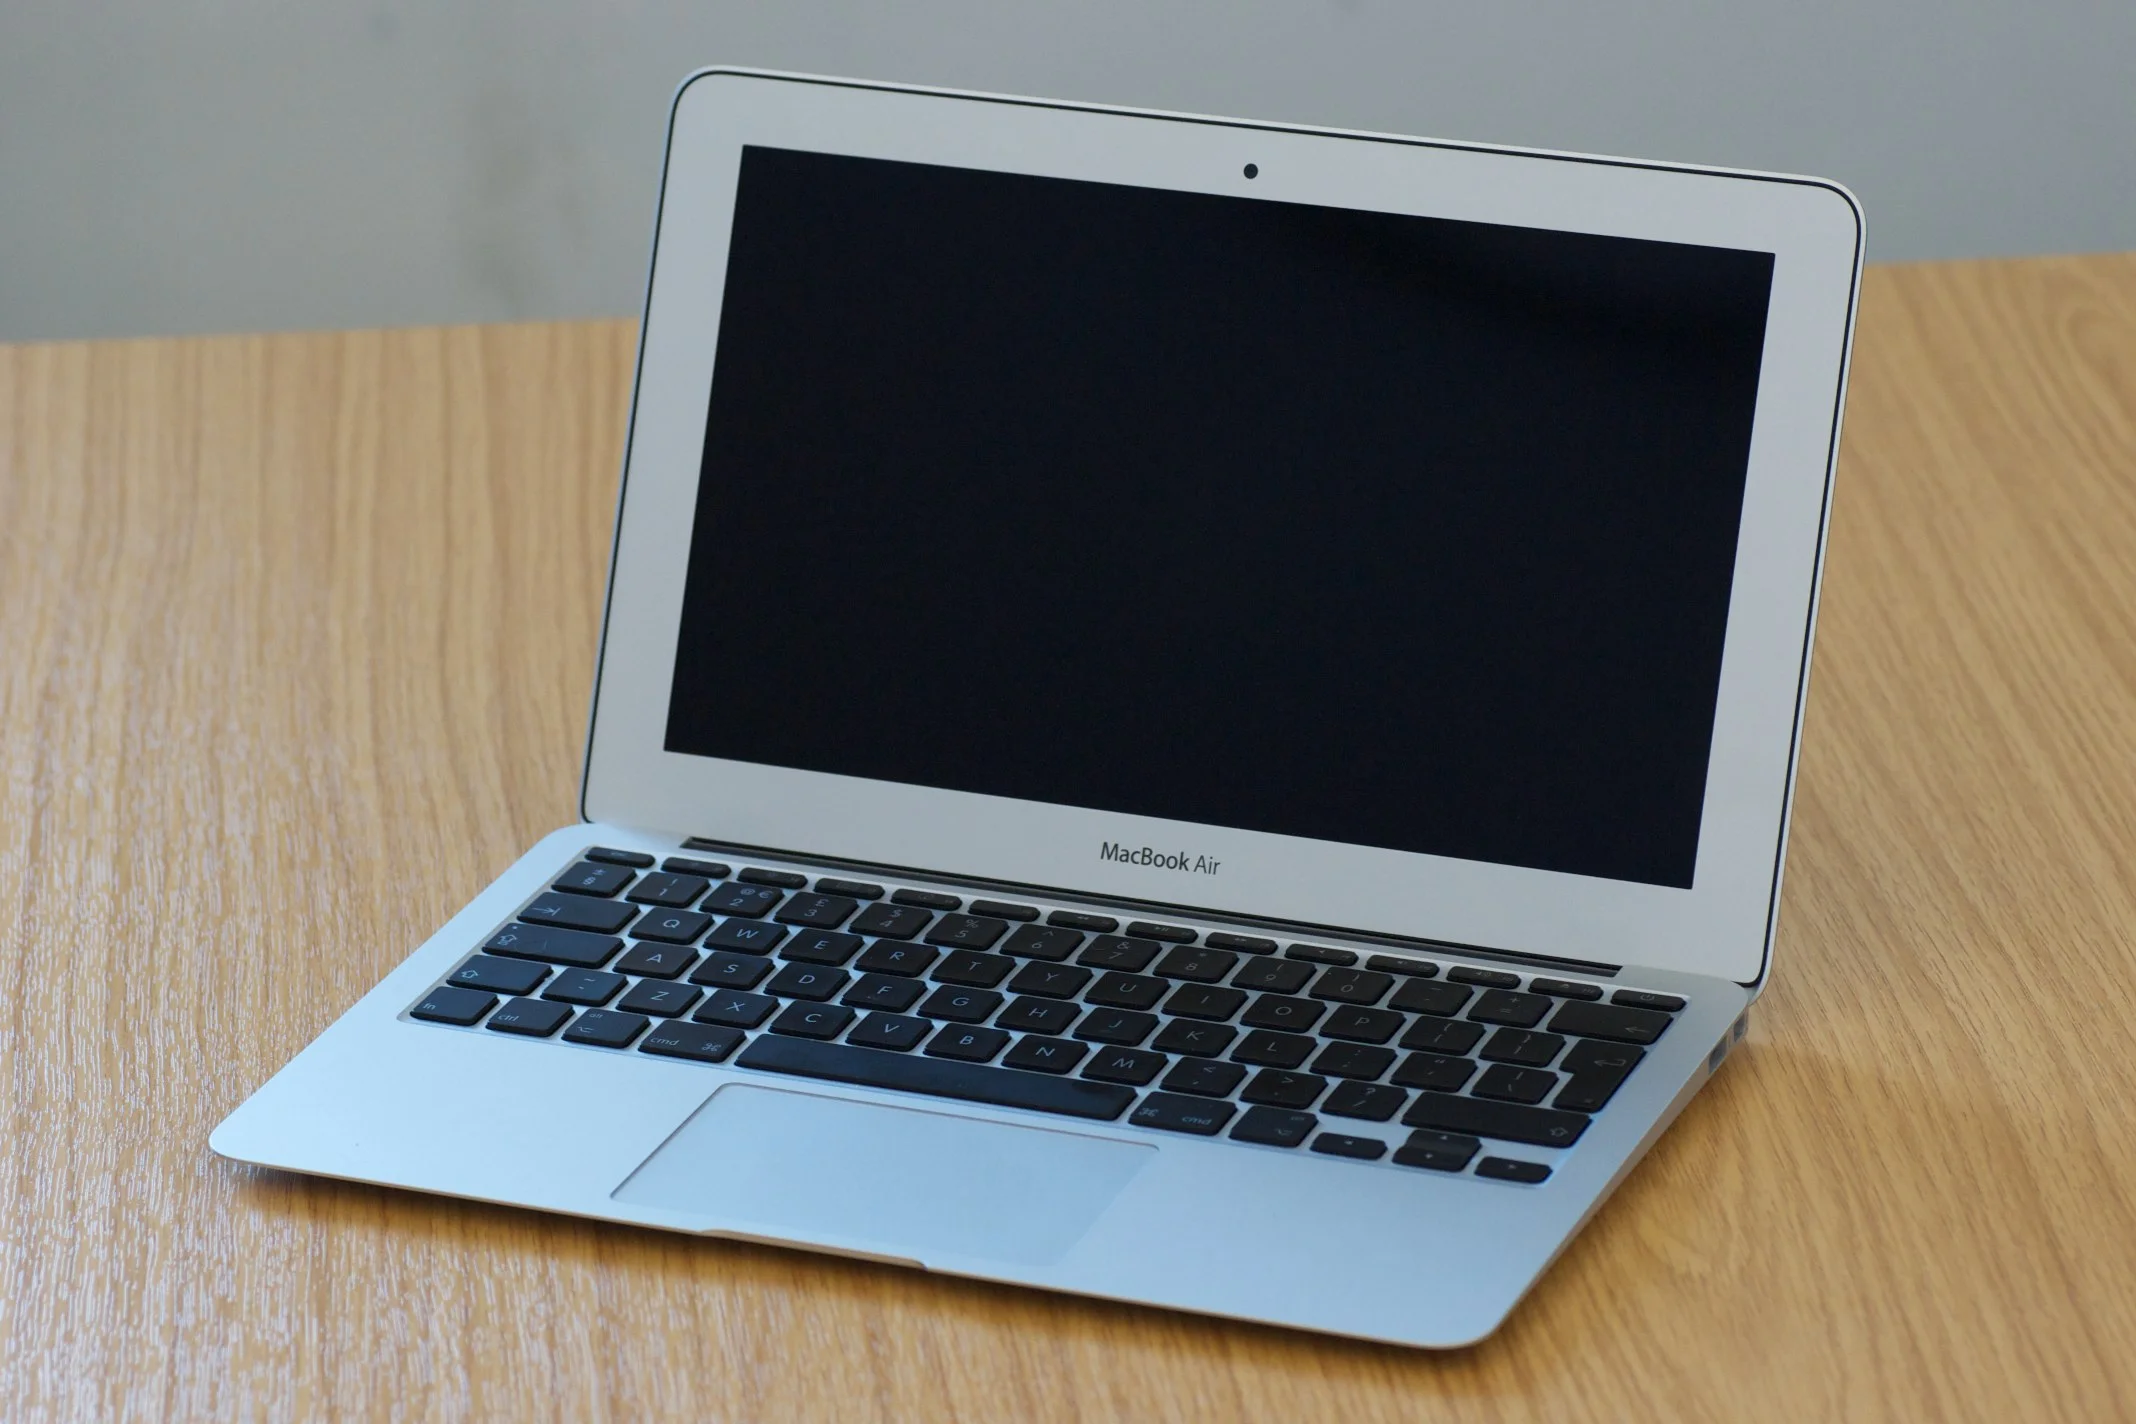 Первый MacBook Air сделал ноутбуки Apple невероятно популярными во всем мире. Тонкий, легкий, красивый и мощный, он стоил дорого, но работал годами. 